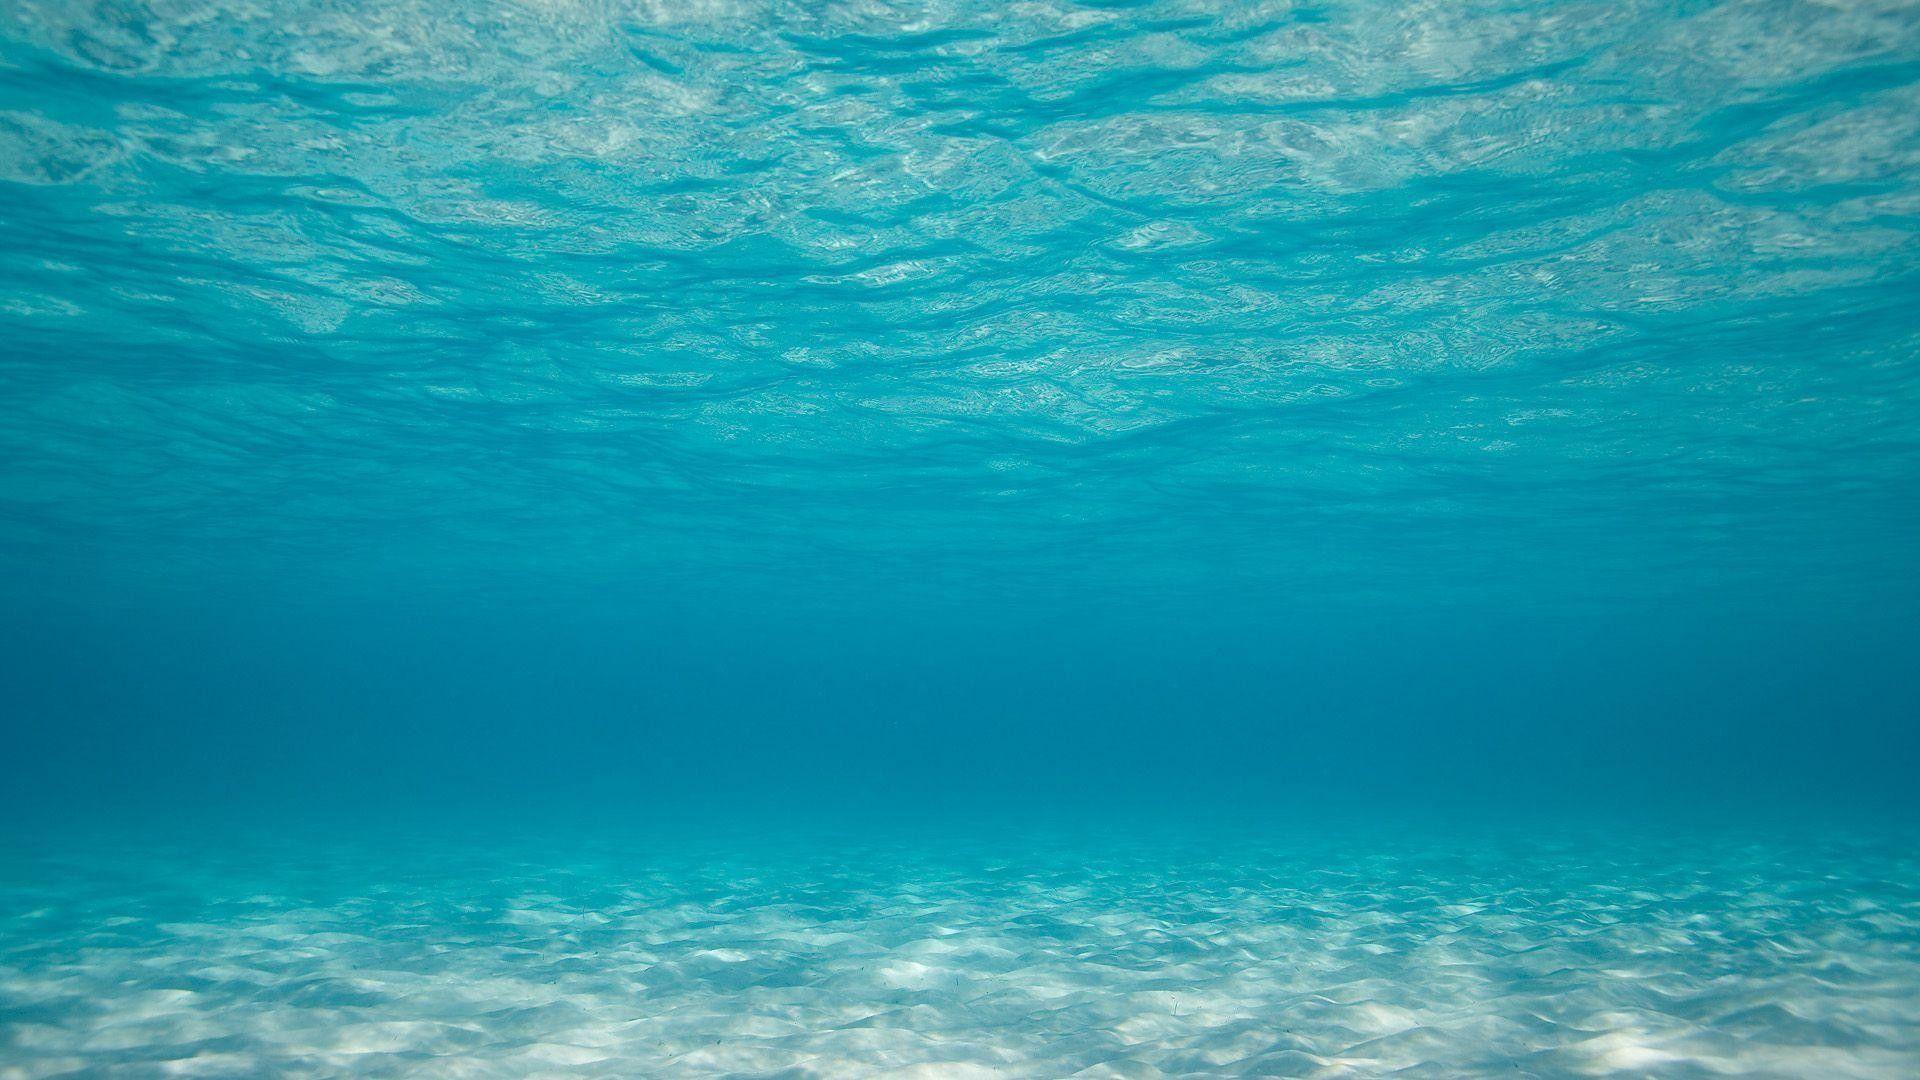 A clear blue underwater view of the ocean floor. - Underwater